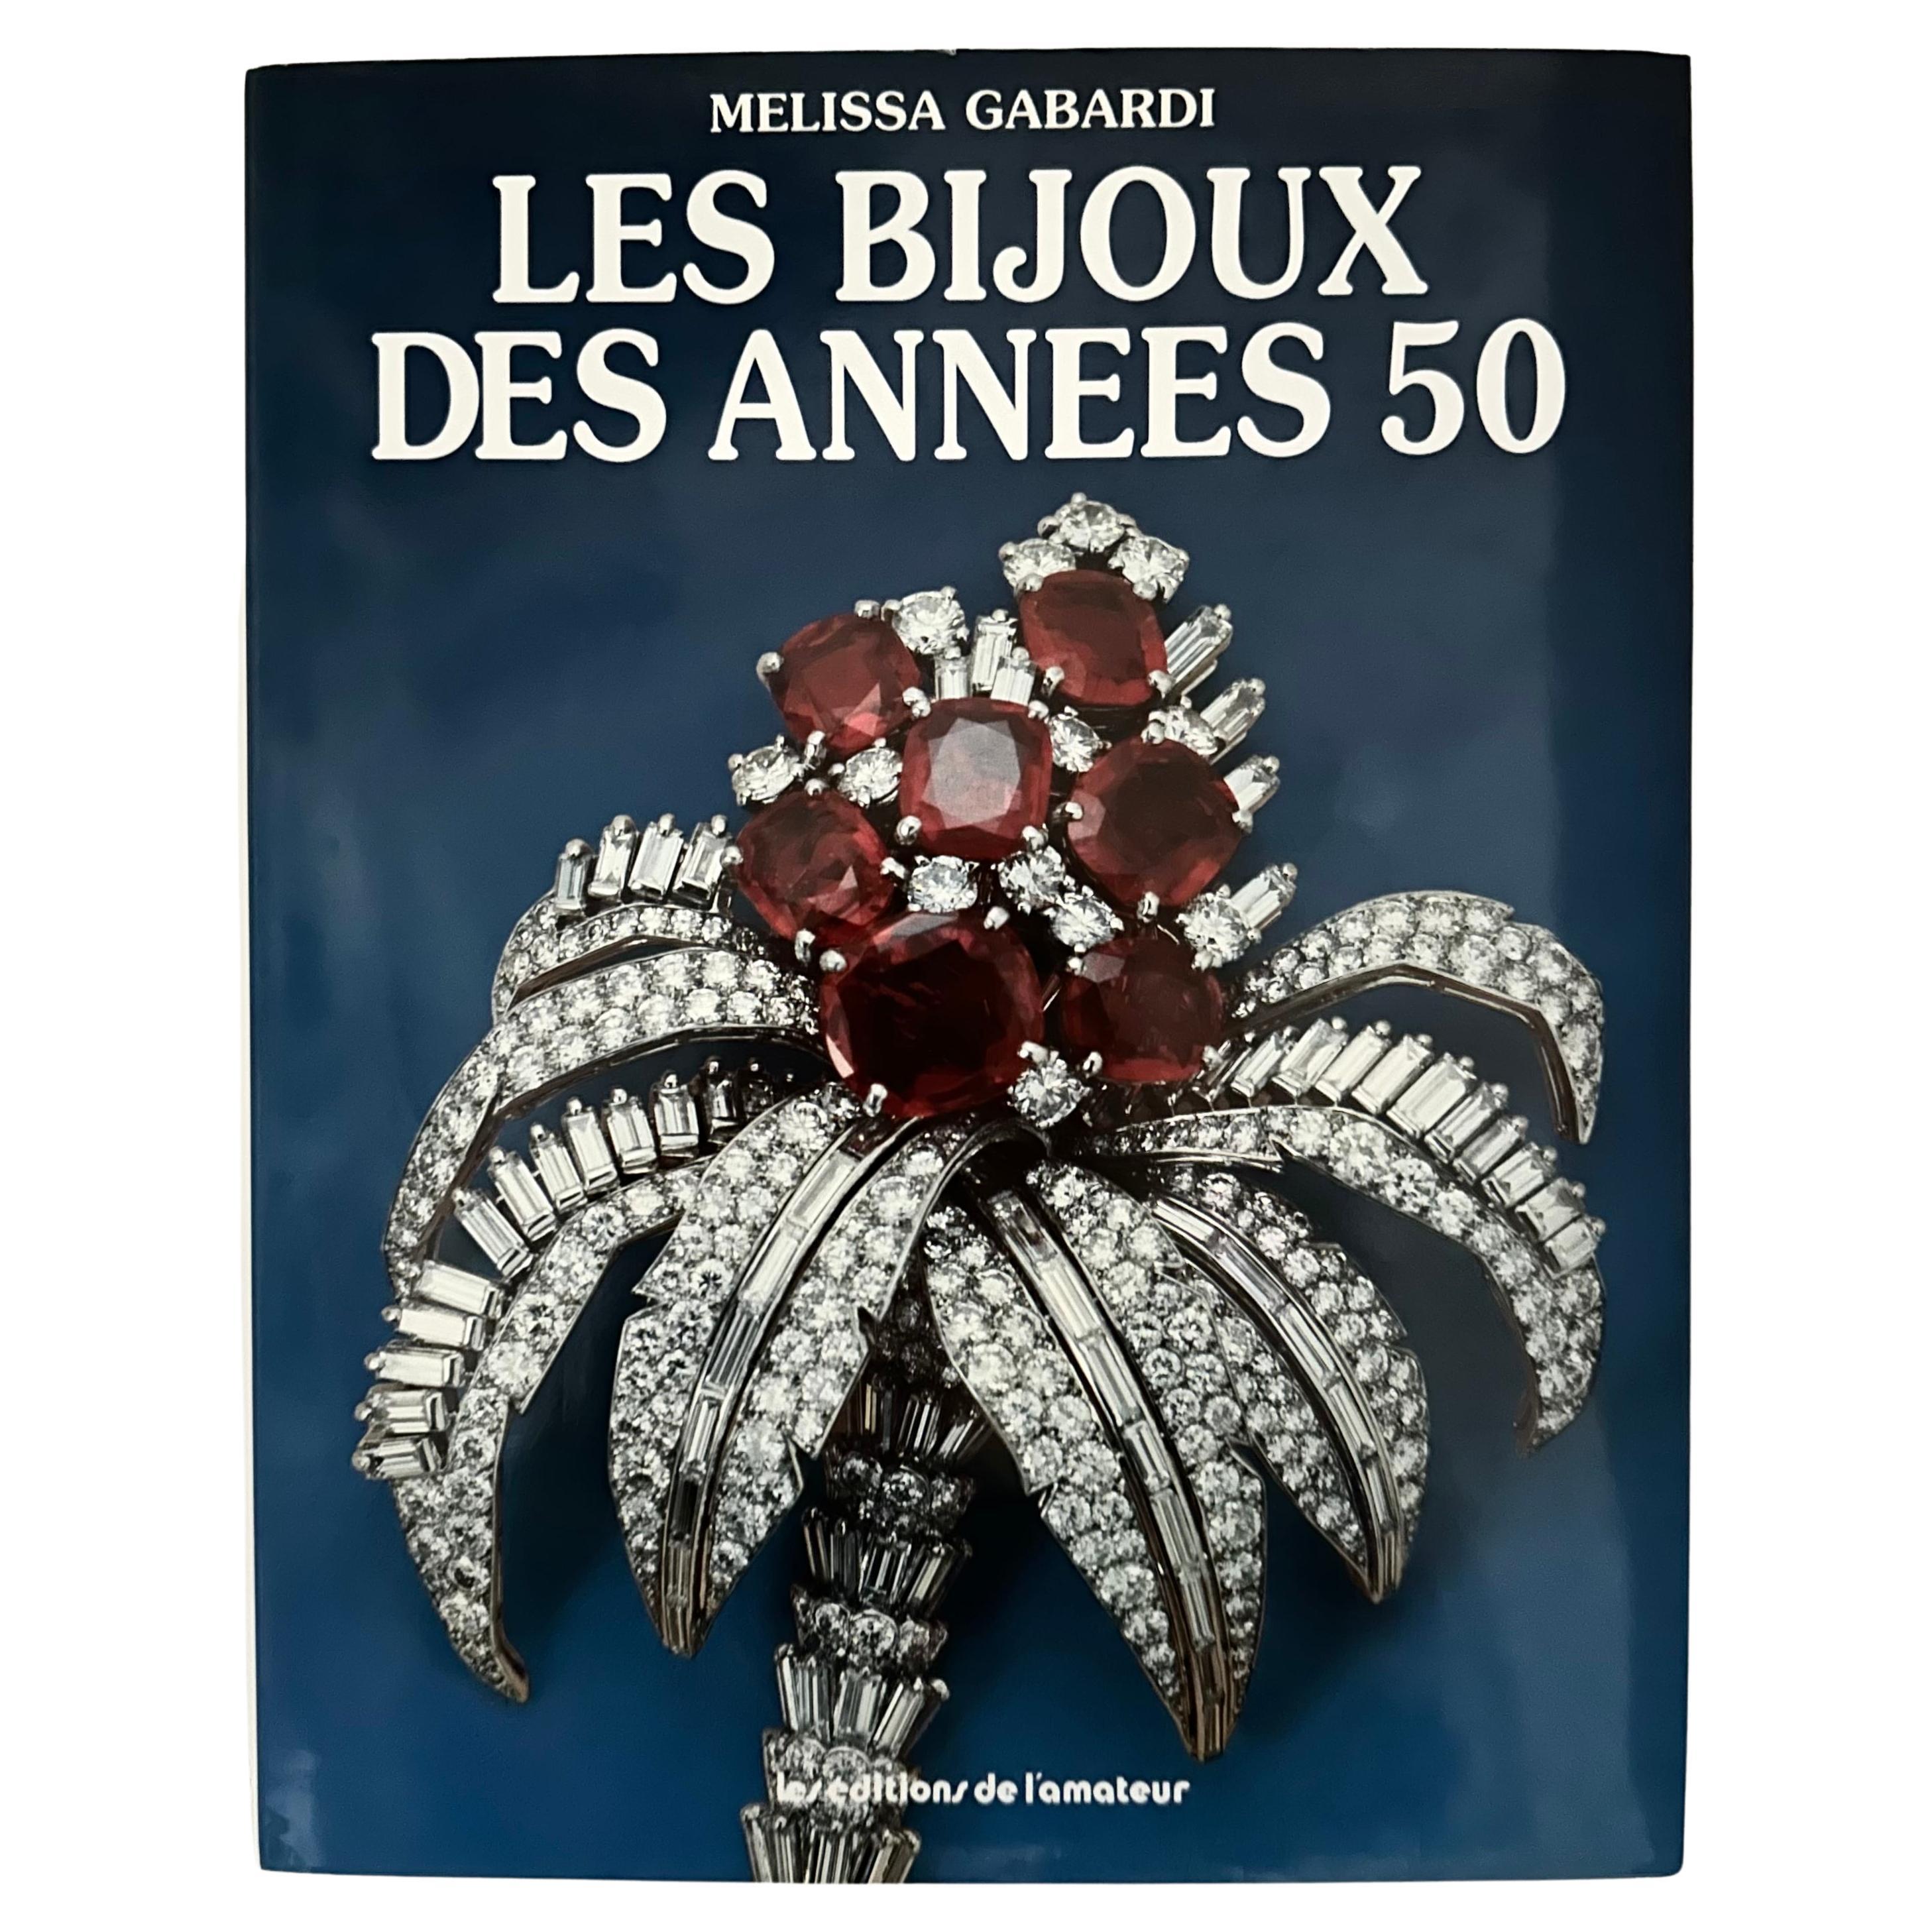 Les Bijoux des Années 50 - Melissa Gabardi - 1st French edition, Paris, 1987